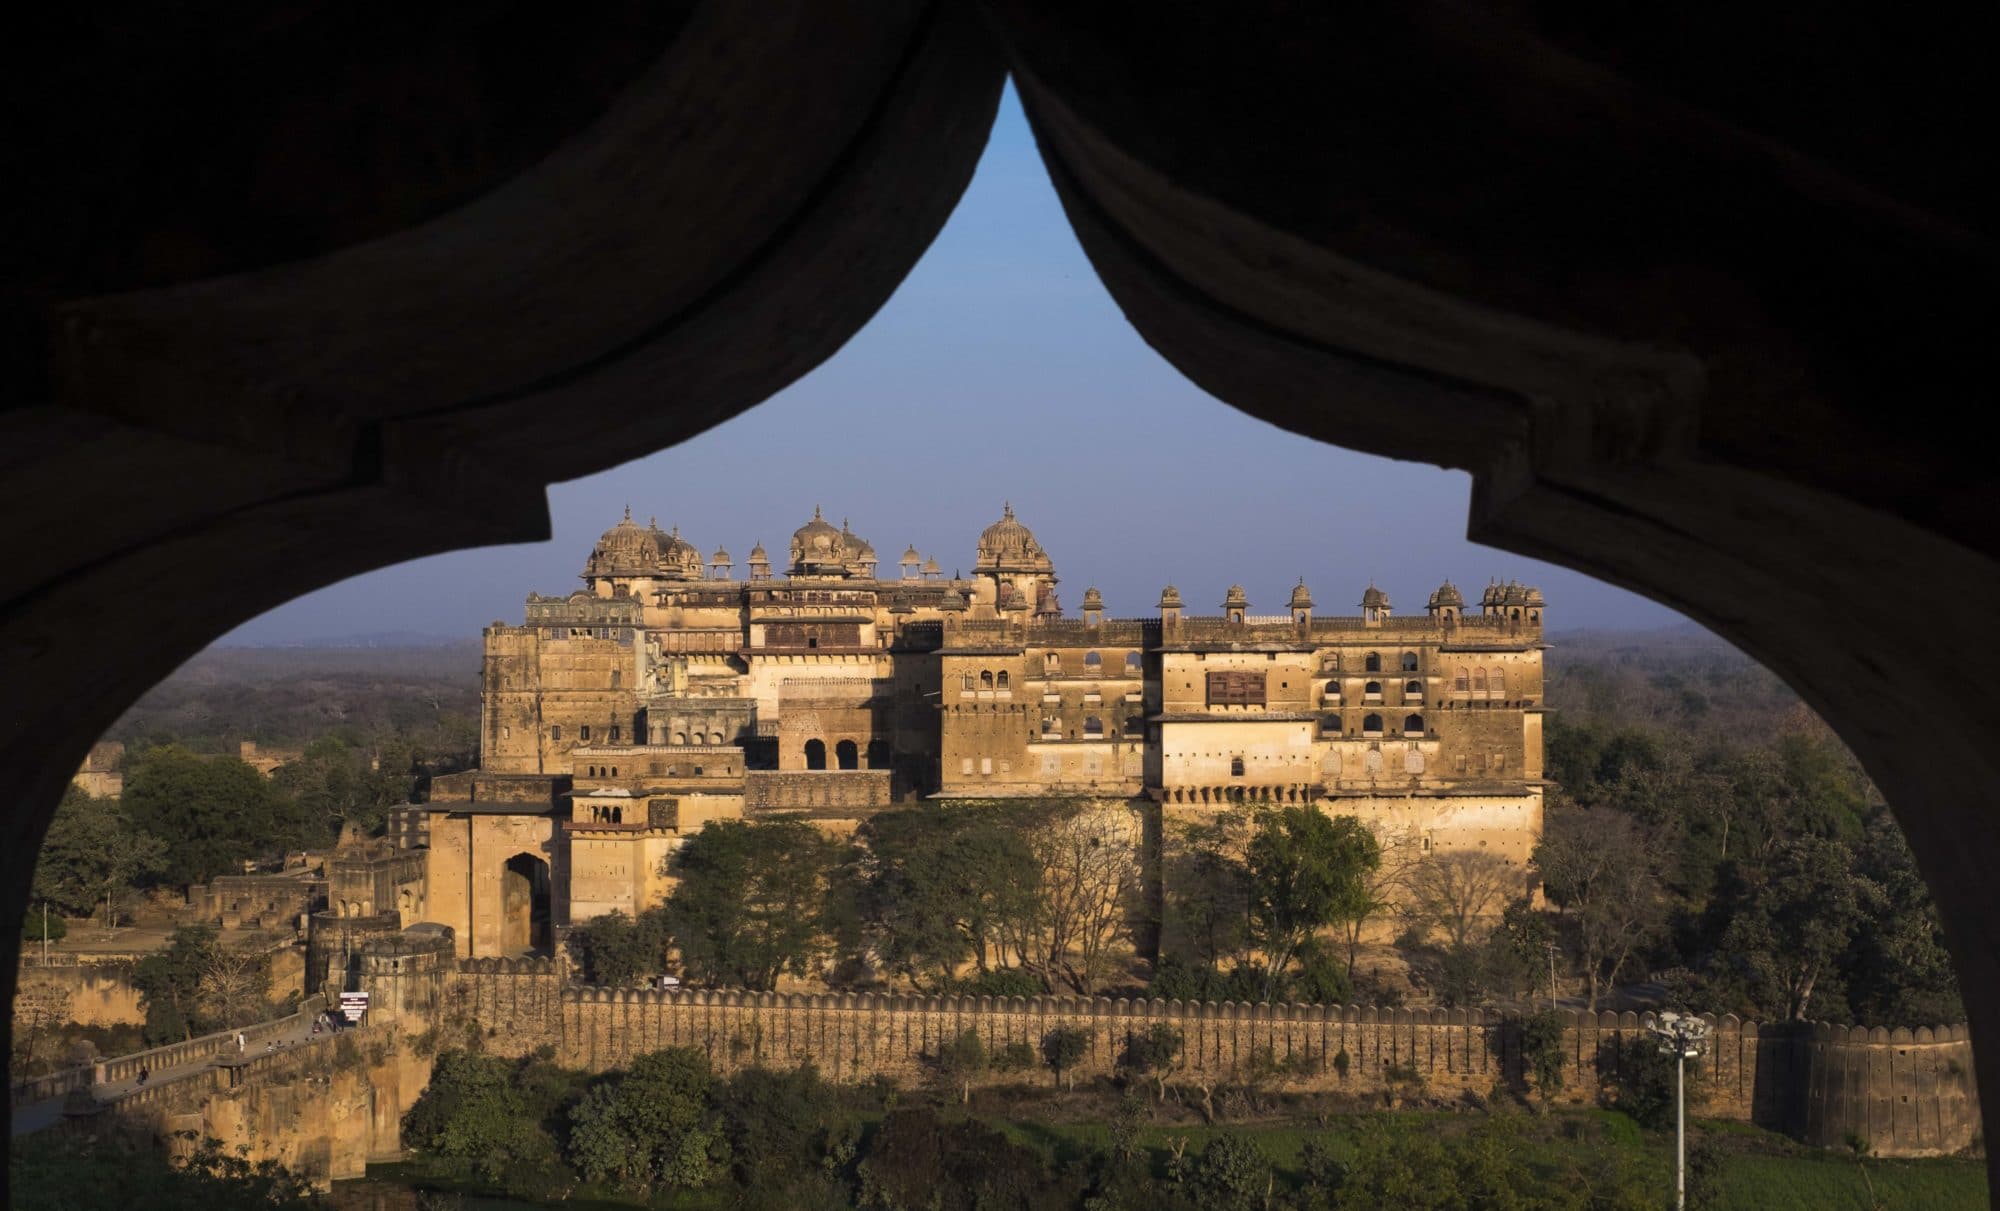 Raja Mahal, Orchha Fort